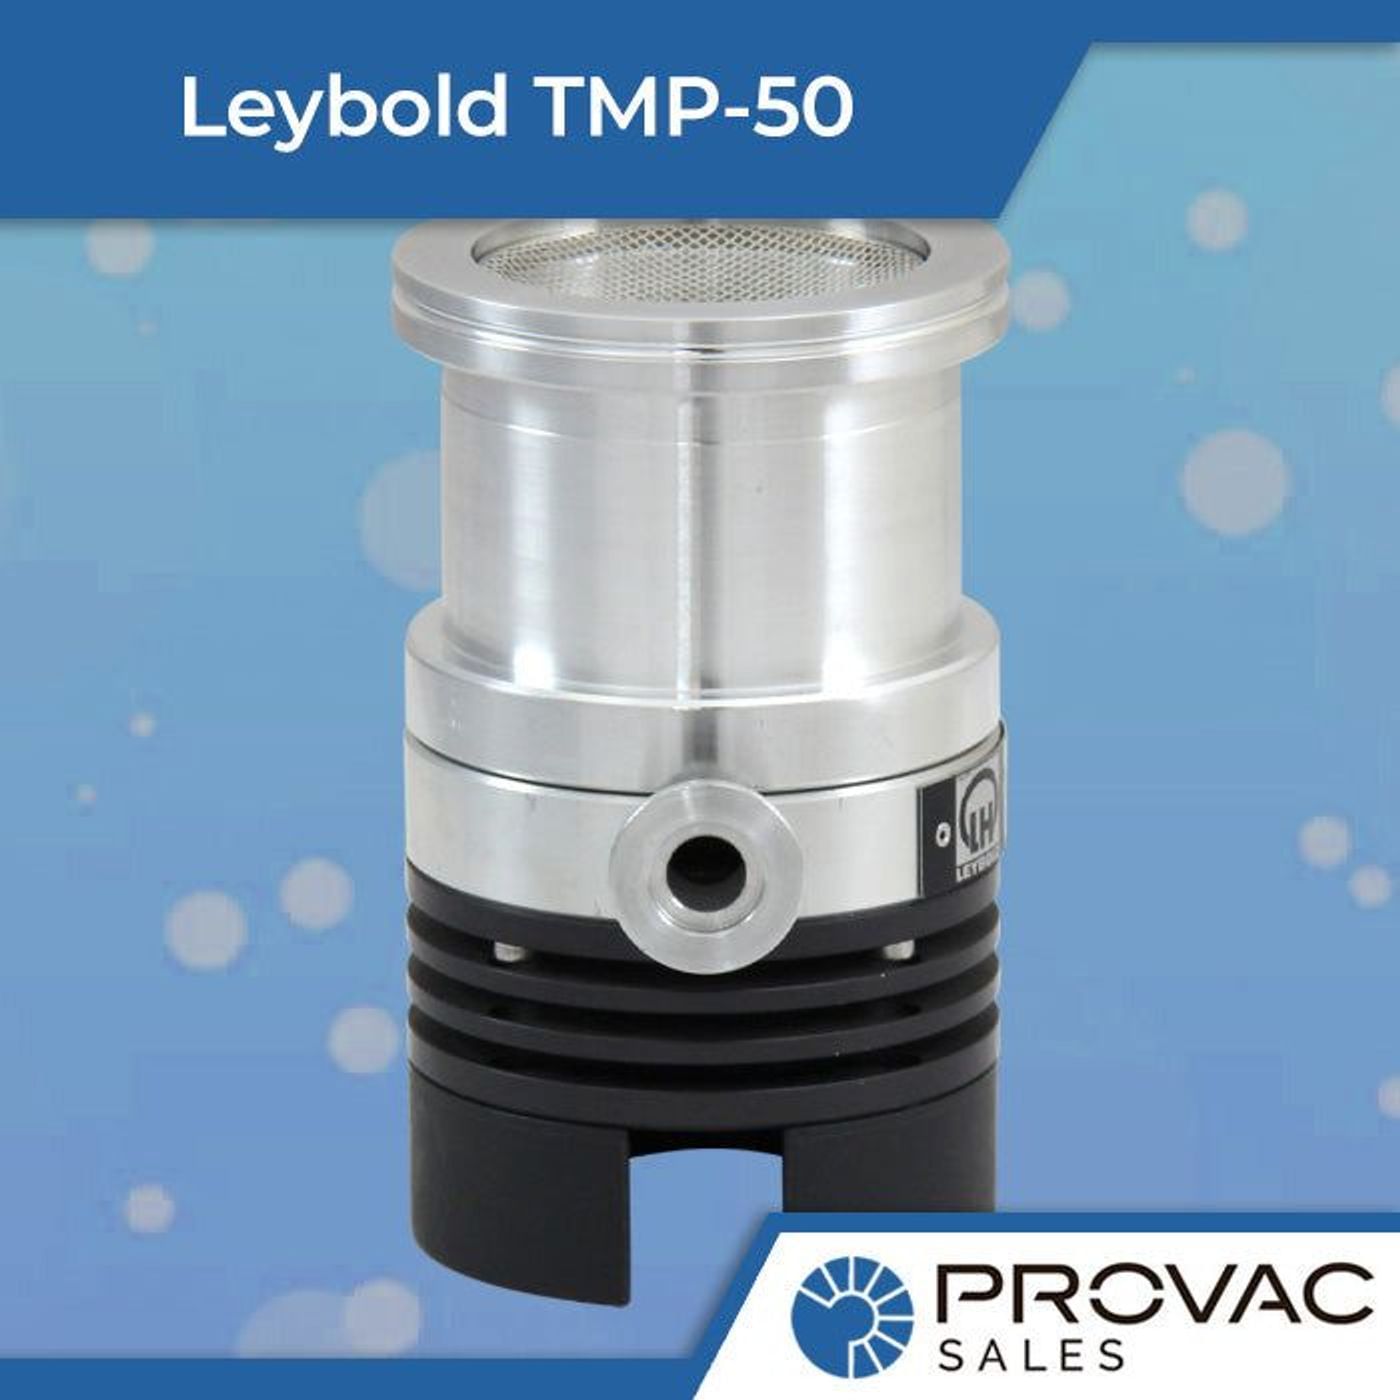 Leybold TMP-50 Turbomolecular Pump